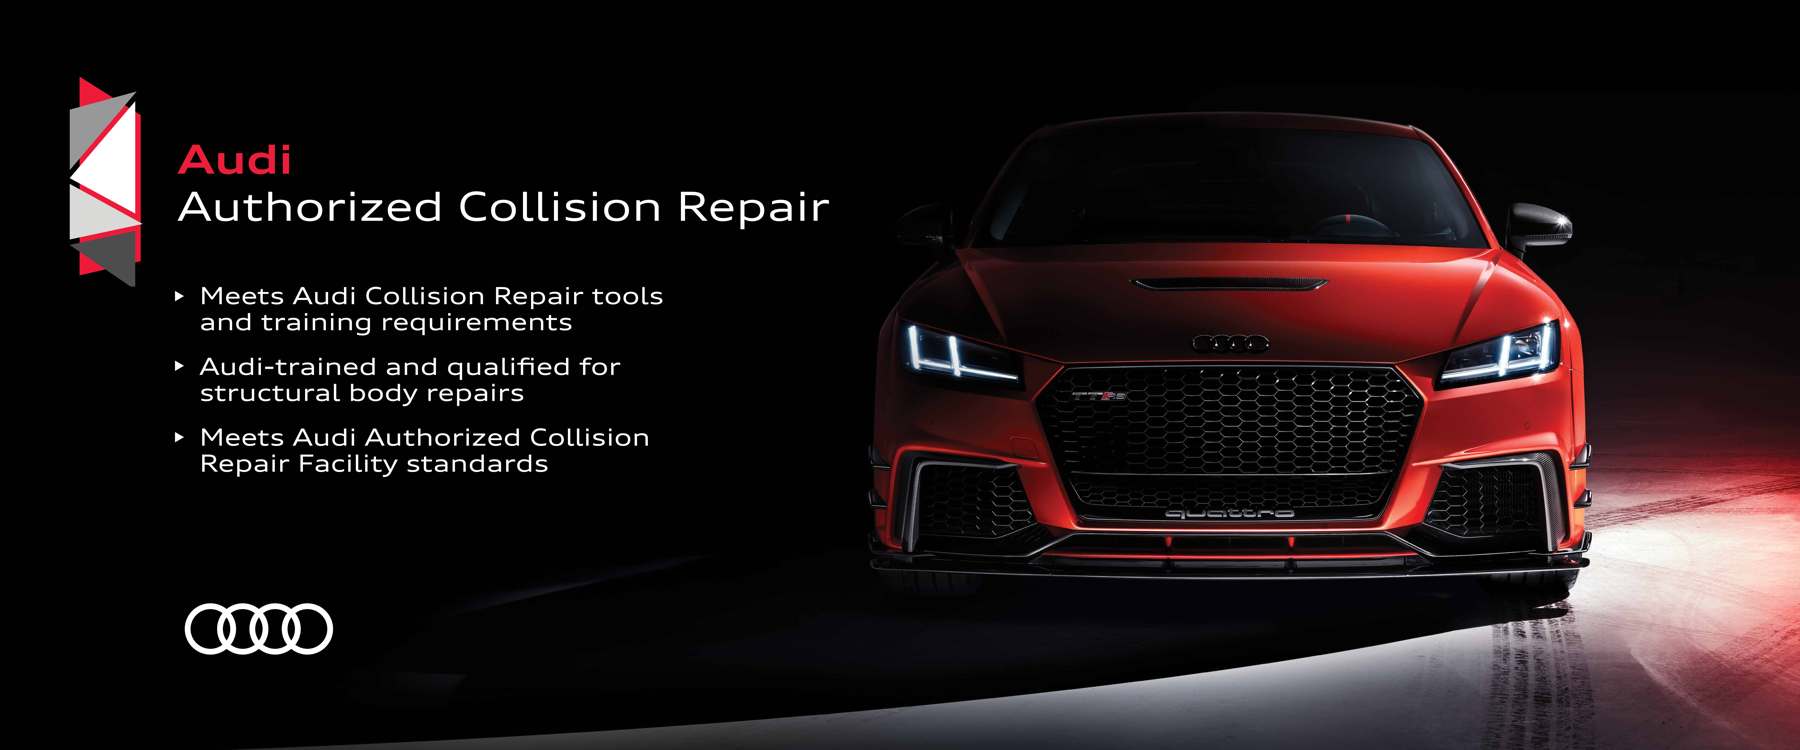 audi certified collision repair banner image